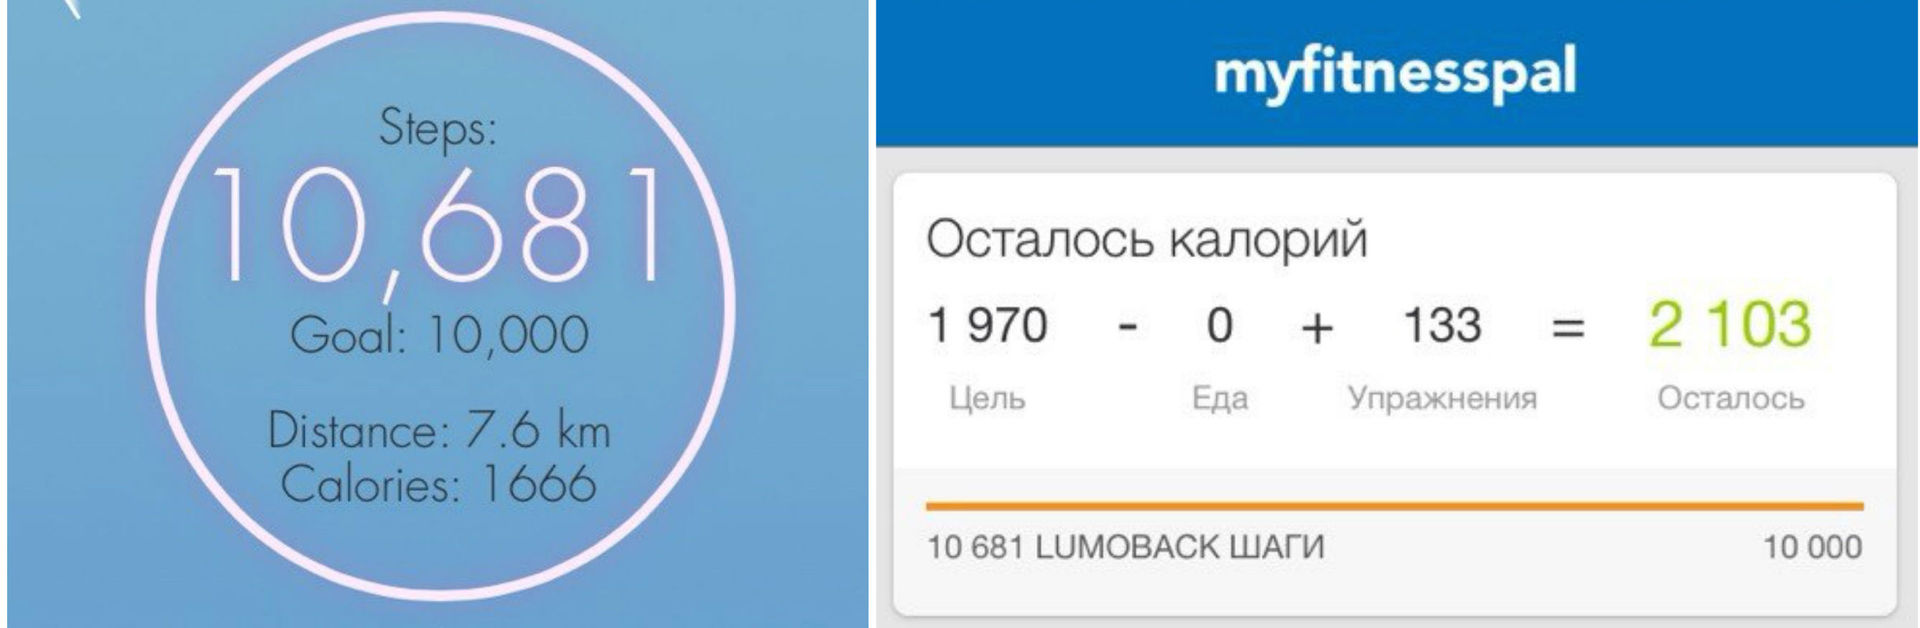 История для позвоночника: обзор корректора осанки Lumo Lift, софта из Google Play и российского «Мастера осанки» - 15